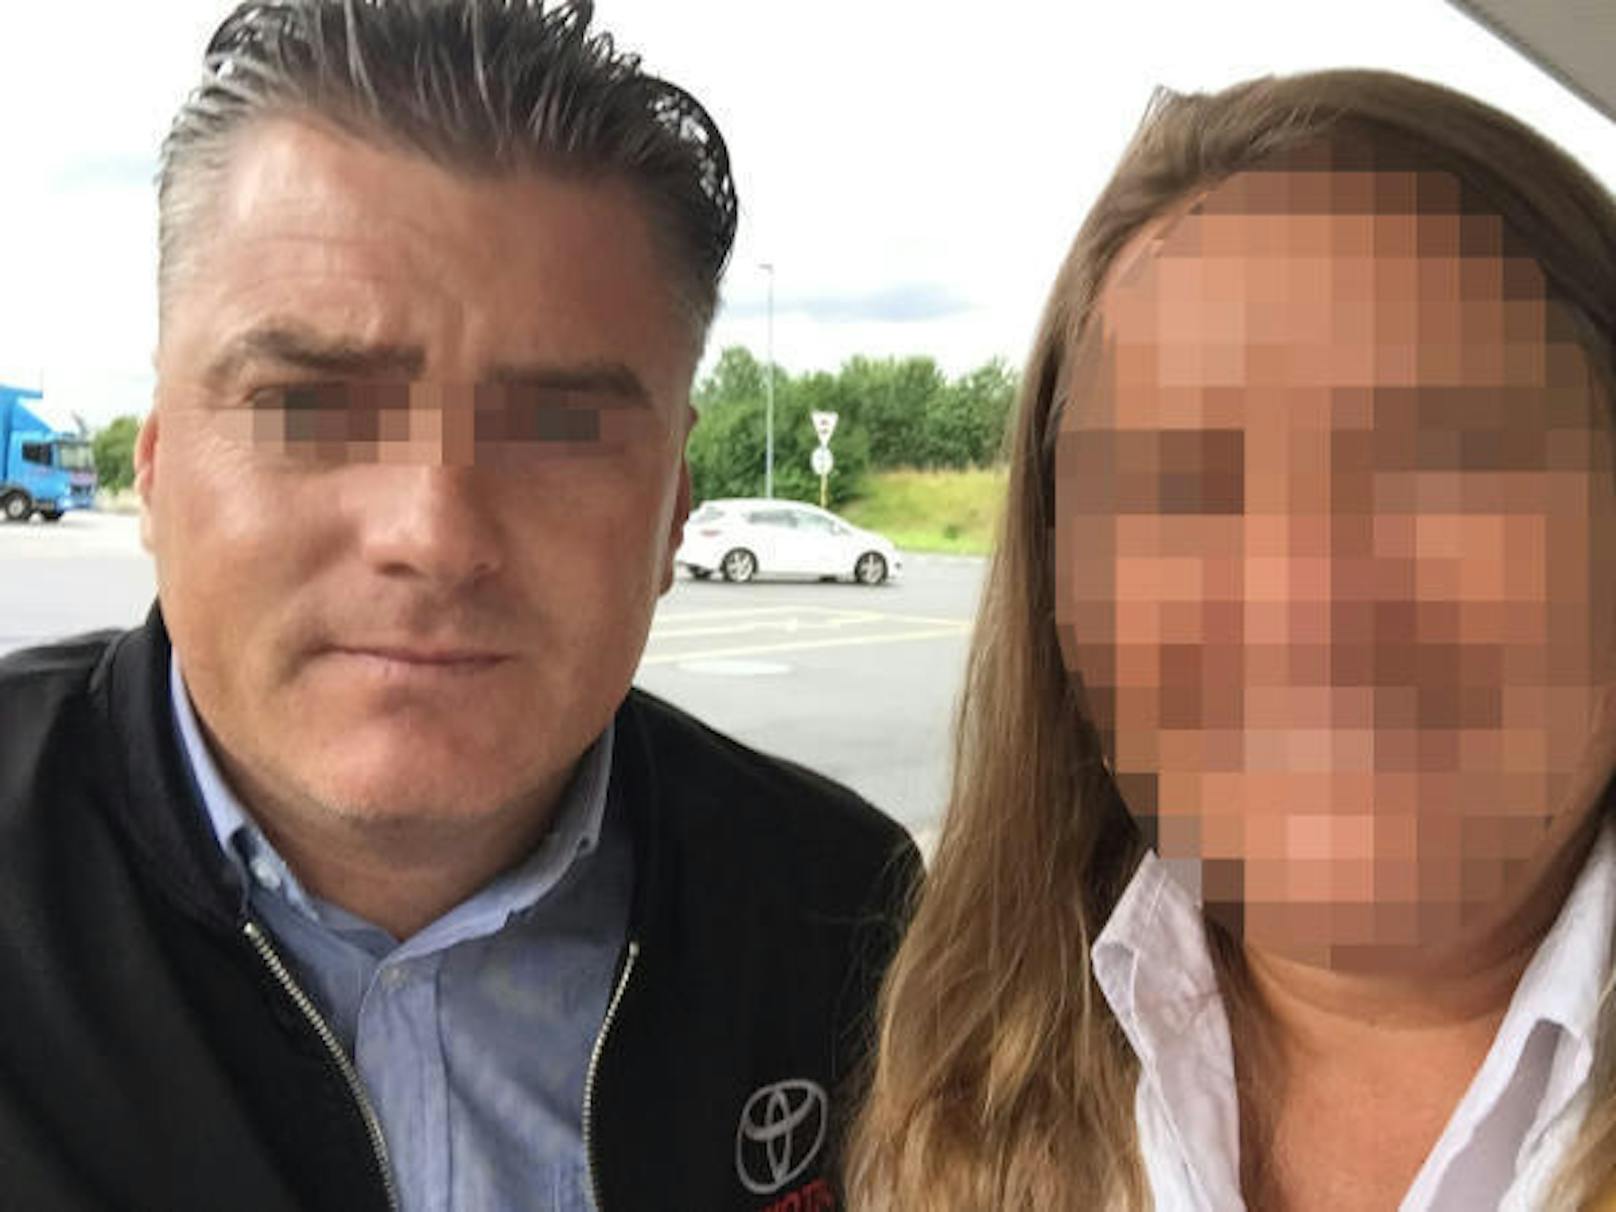 Der Deutsche ist nicht das erste Opfer: Der Betrüger machte sogar schon ein Selfie mit einem seiner Opfer. Dieser Frau knöpfte er als falscher Toyota-Mitarbeiter Geld ab. Er trug dabei eine gefälschte Toyota-Jacke.